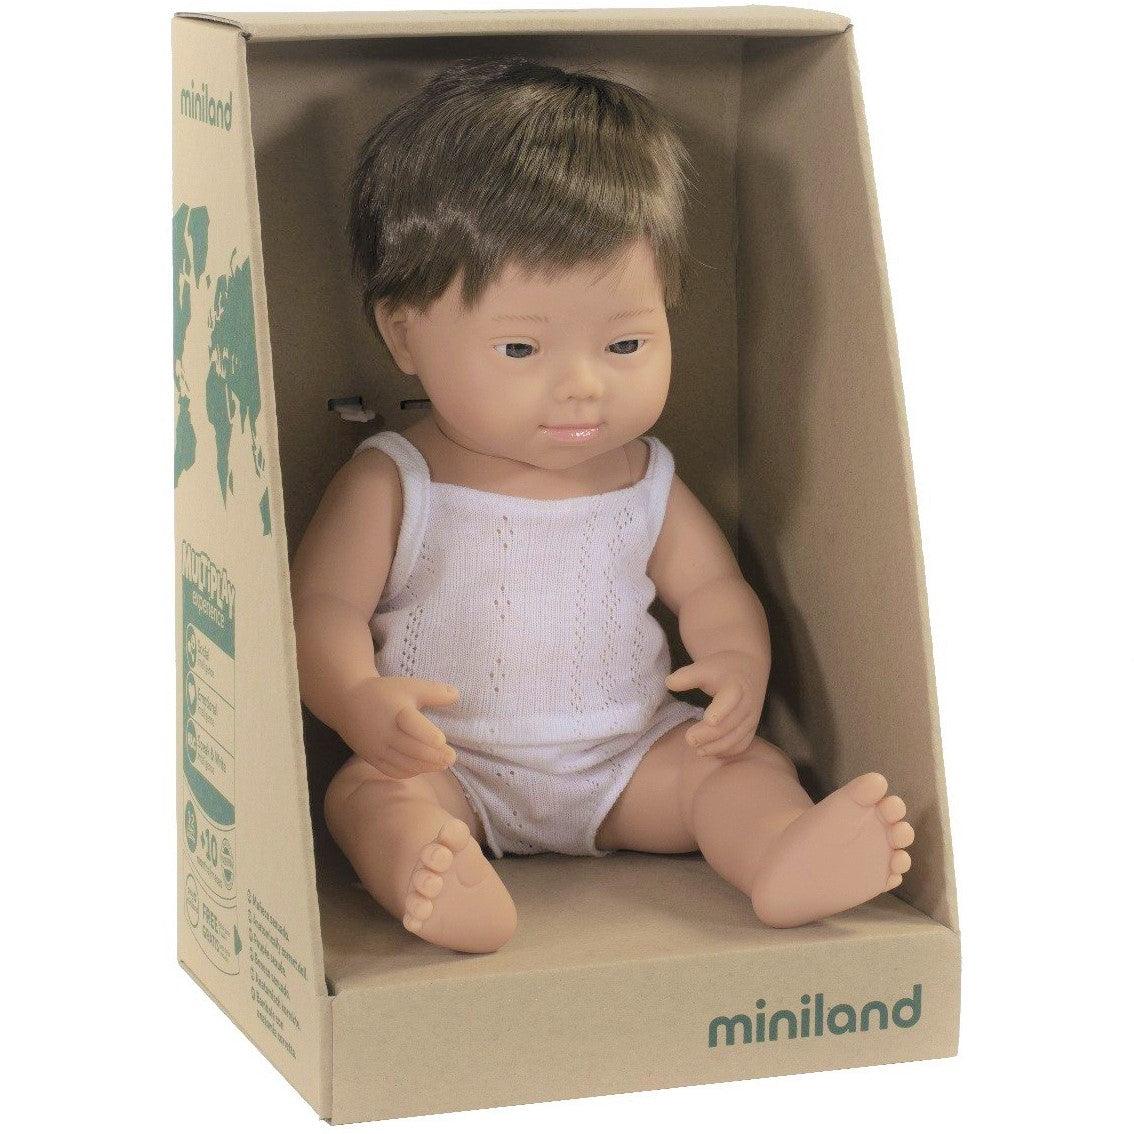 Miniland: lalka chłopiec z zespołem Downa Europejczyk 38 cm - Noski Noski